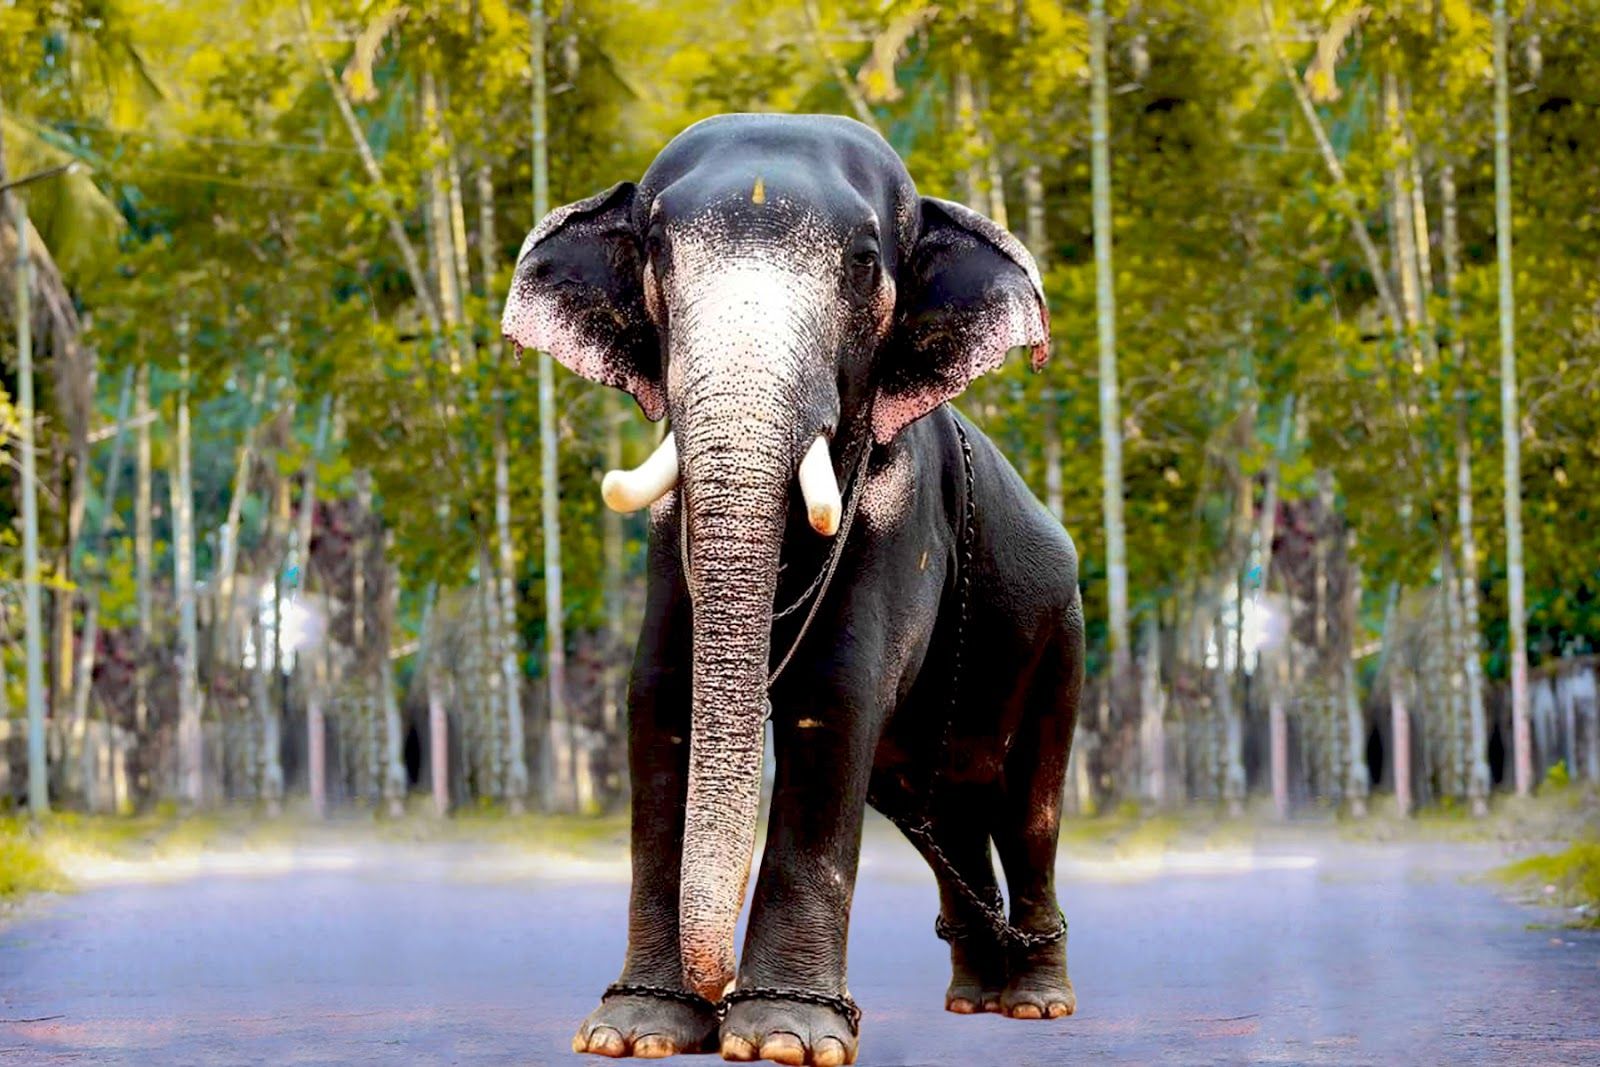 Kerala Elephants Image. Kerala elephants wallpaper HD. Kerala elephant photo and names